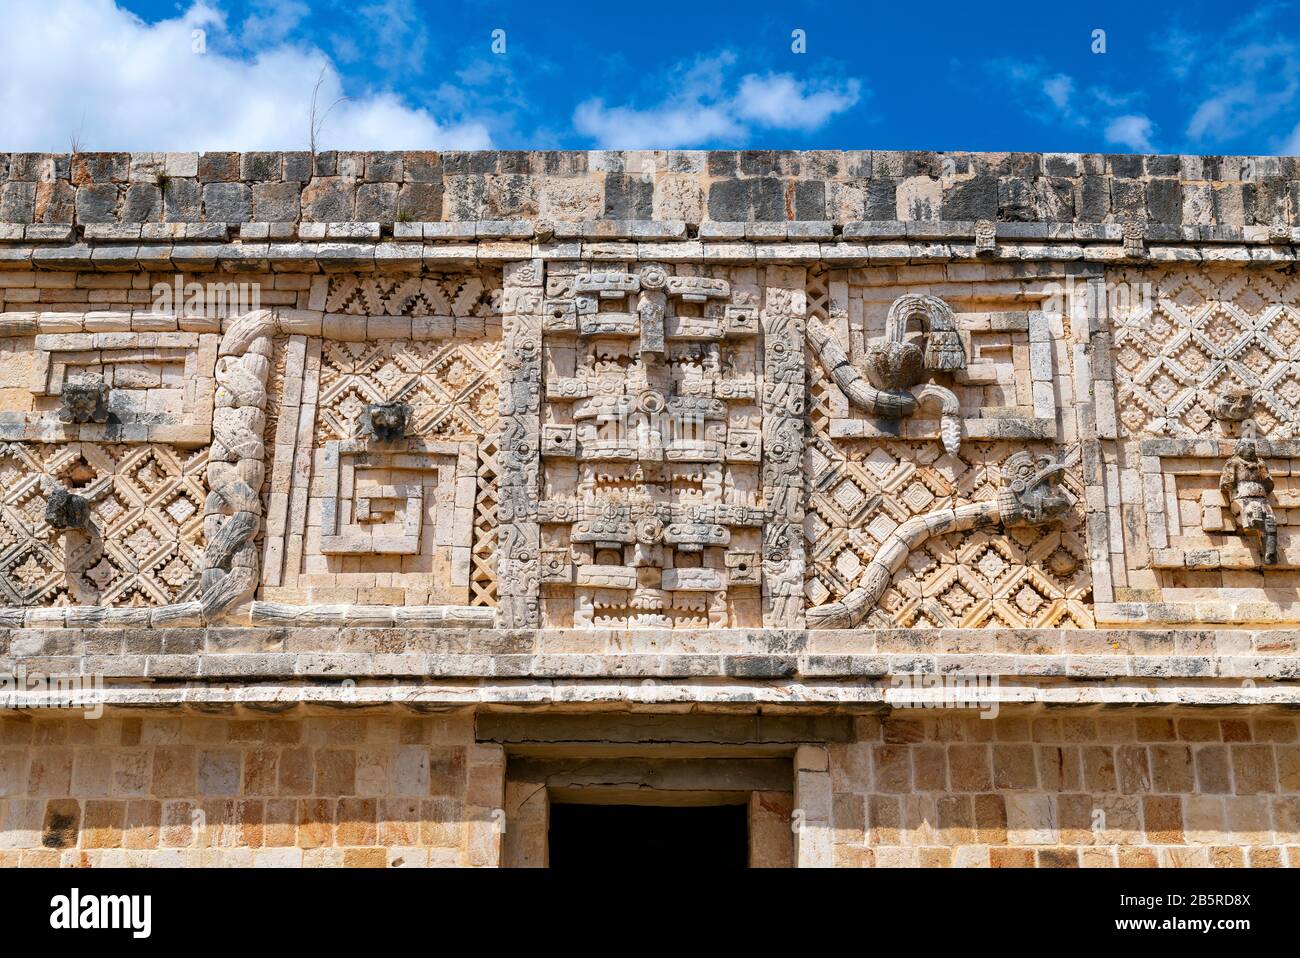 Architekturdetails des Nunnery Quadrangle innerhalb der Maya-Stätte von Uxmal in der Nähe von Merida, Yucatan-Halbinsel, Mexiko. Stockfoto